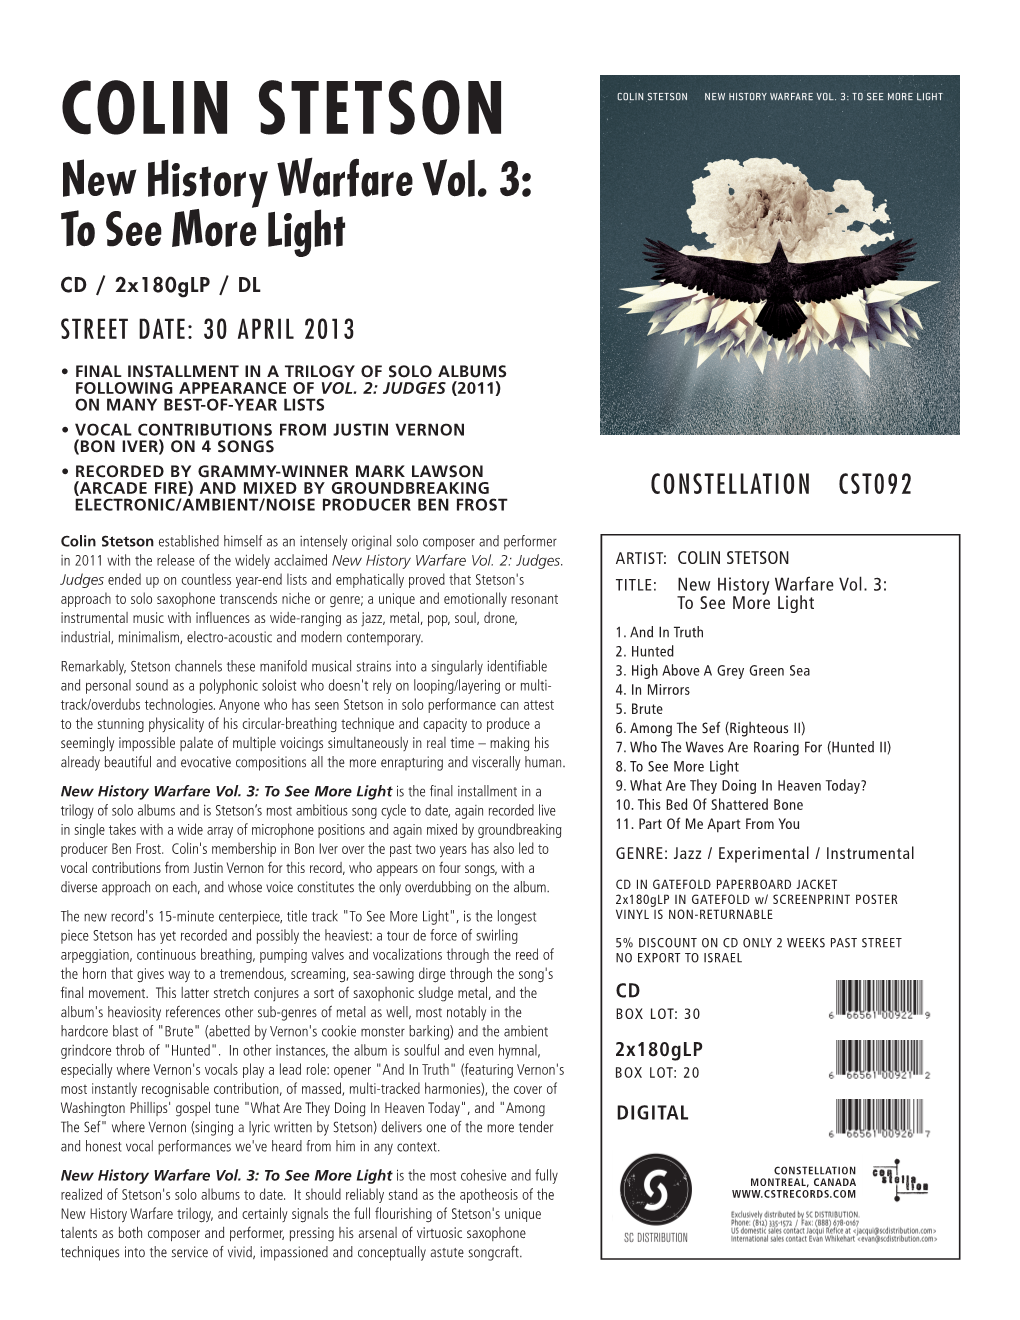 COLIN STETSON New History Warfare Vol